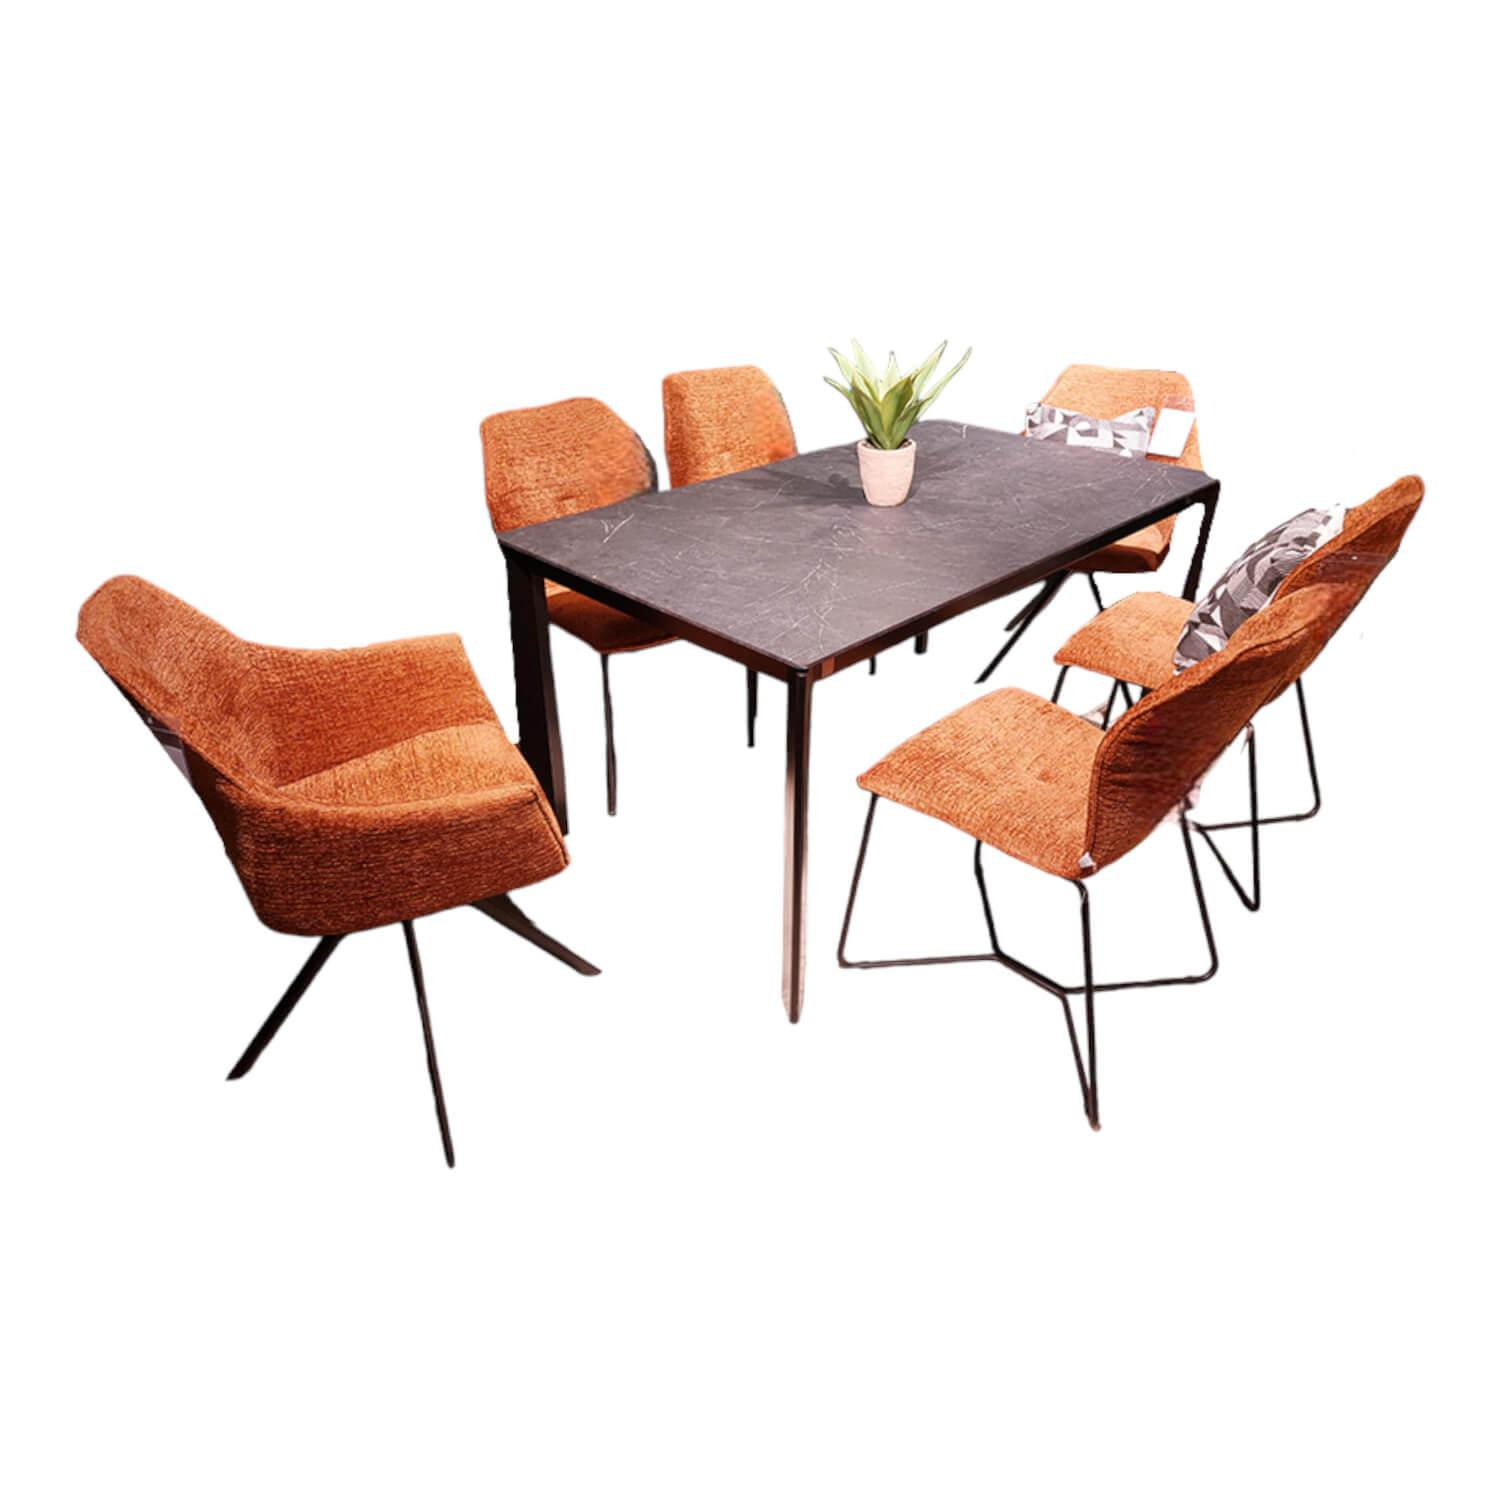 6er Set Stuhl Global Pinto Bezug Stoff Fusion Copper Orange Braun Gestell Aluminium Schwarz Pulverbeschichtet Ohne Tisch